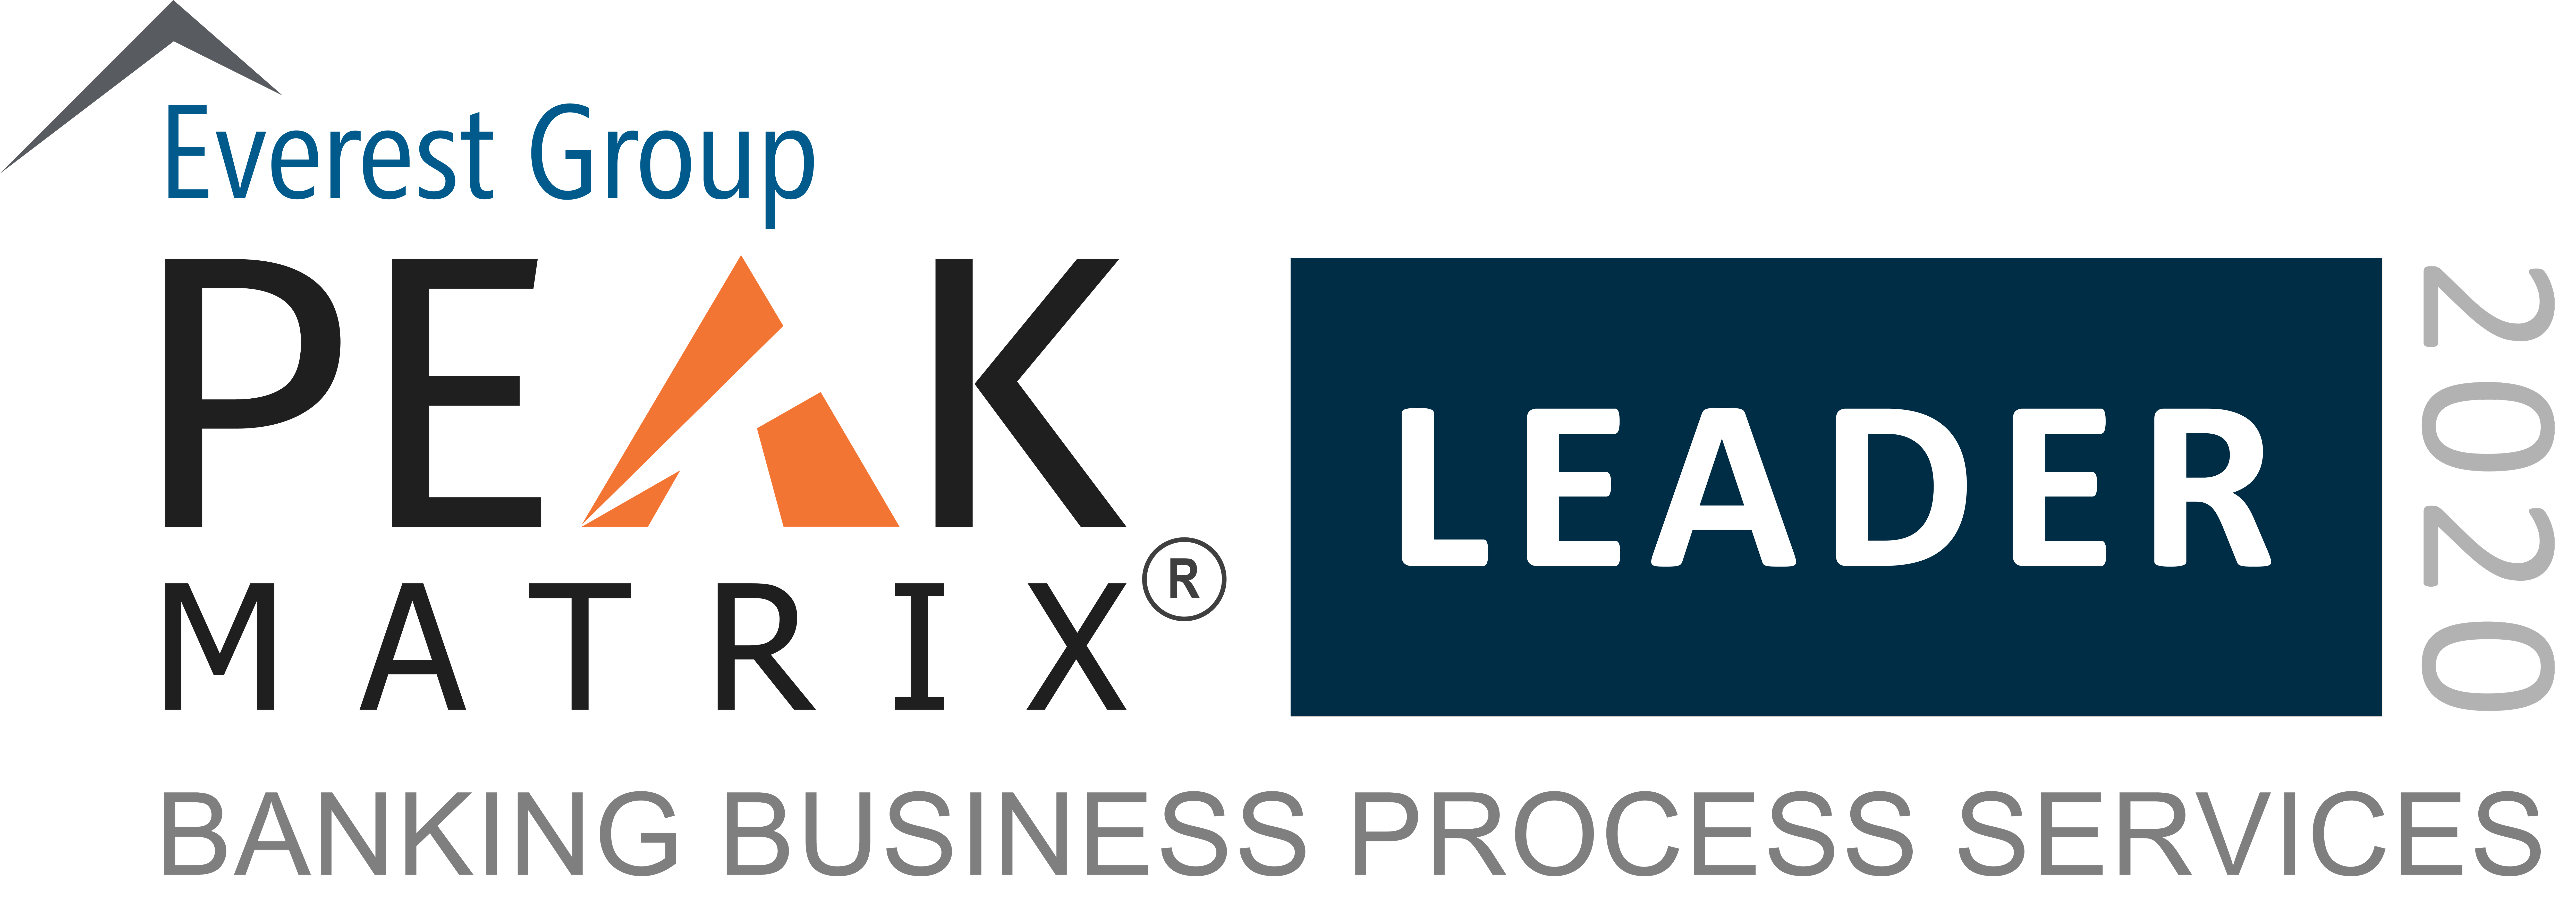 banking-bps-2020-peak-matrix-award-logo